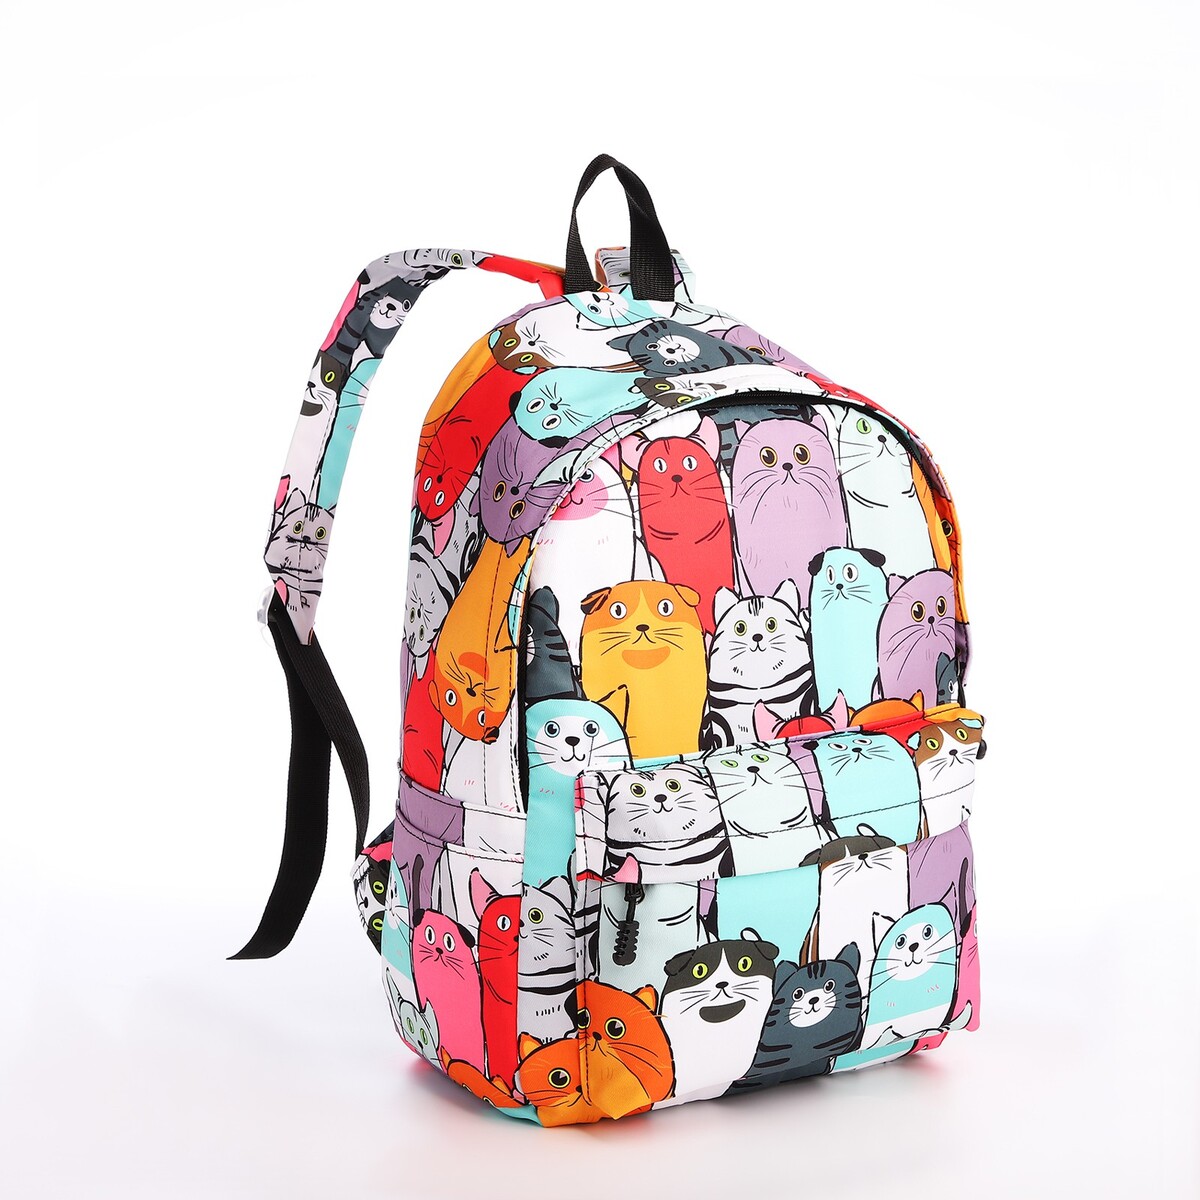 Рюкзак школьный из текстиля на молнии, 4 кармана, кошелек, цвет разноцветный